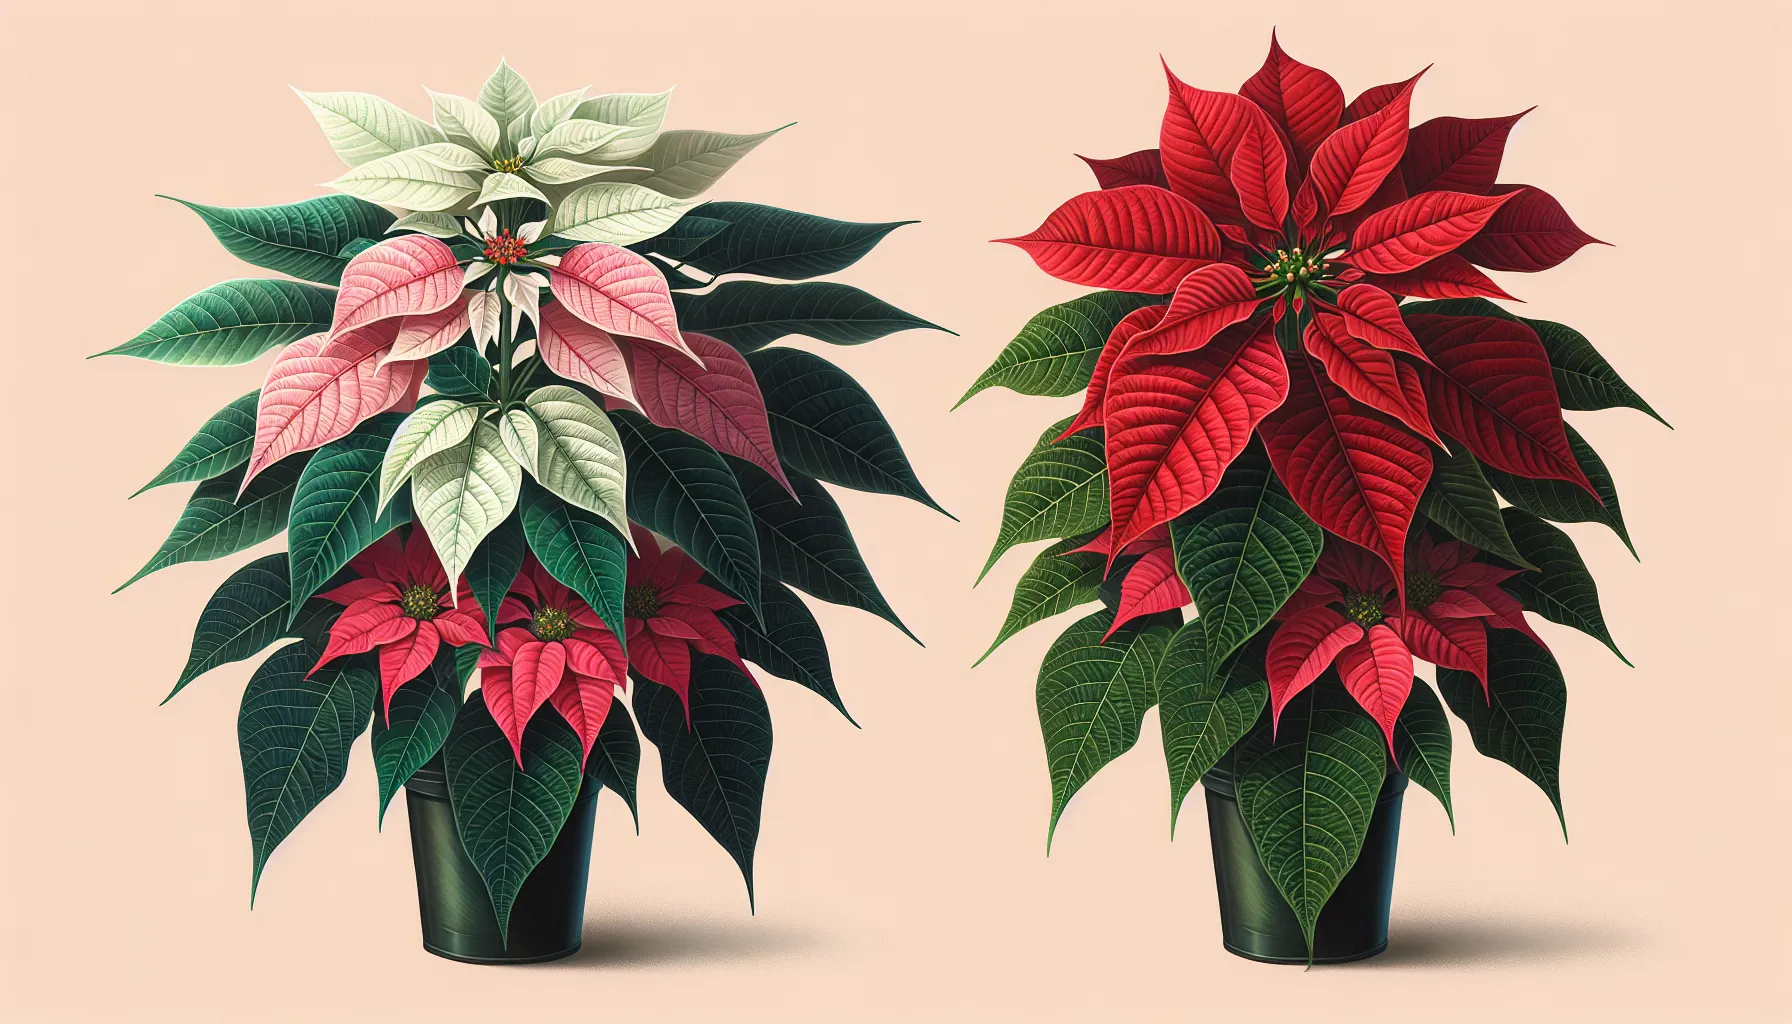 Descubre las diferencias entre las plantas de Navidad Poinsettia y Princettia en este artículo informativo.